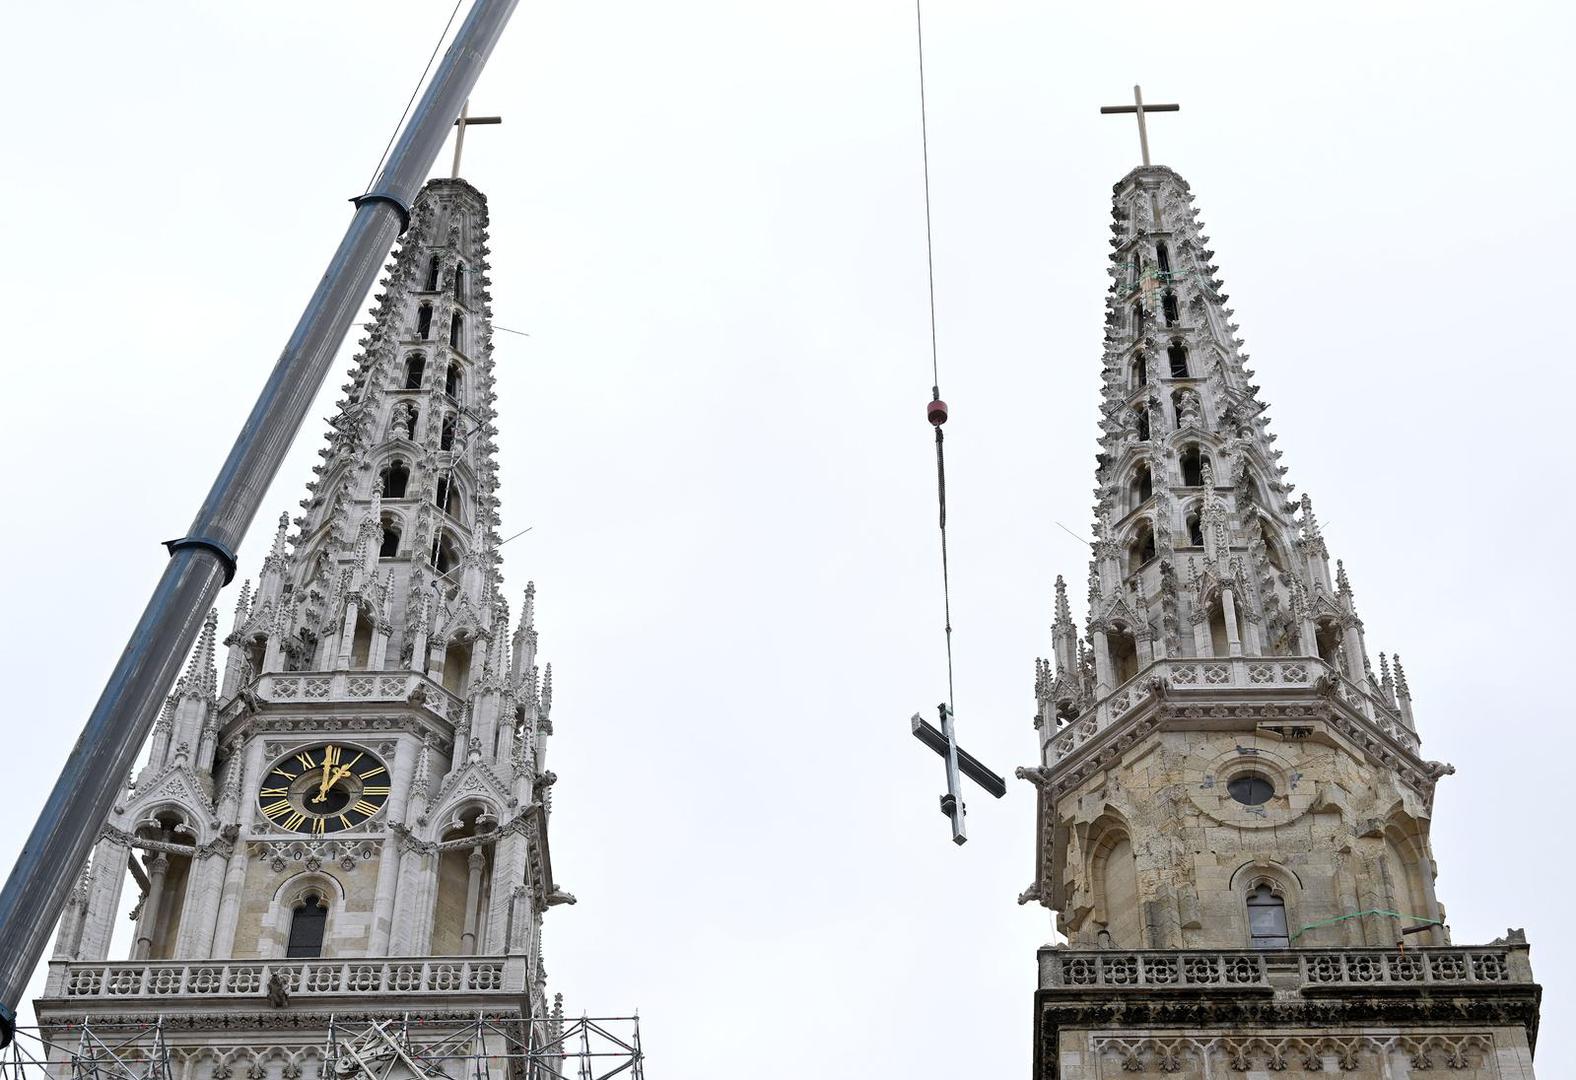 28.03.2023., Zagreb - Postavljanje skele na tornjeve katedrale kako bi se mogla obnovit nakon sto je stradala u potresu.  Photo: Marko Lukunic/PIXSELL